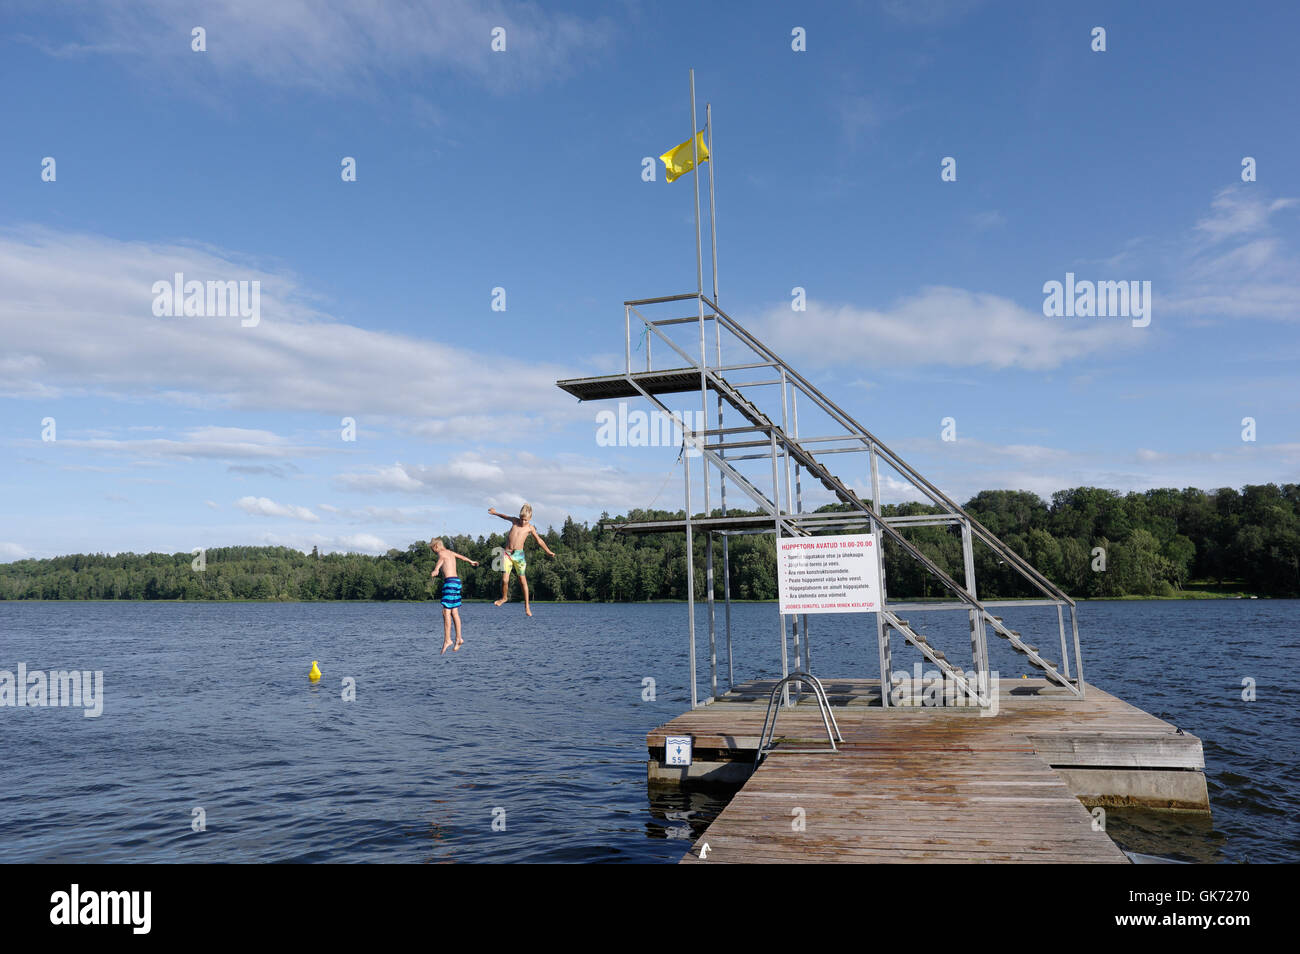 Les garçons sautent dans l'eau de la tour de plongée. 9 août 2016, Tallinn, Estonie Banque D'Images